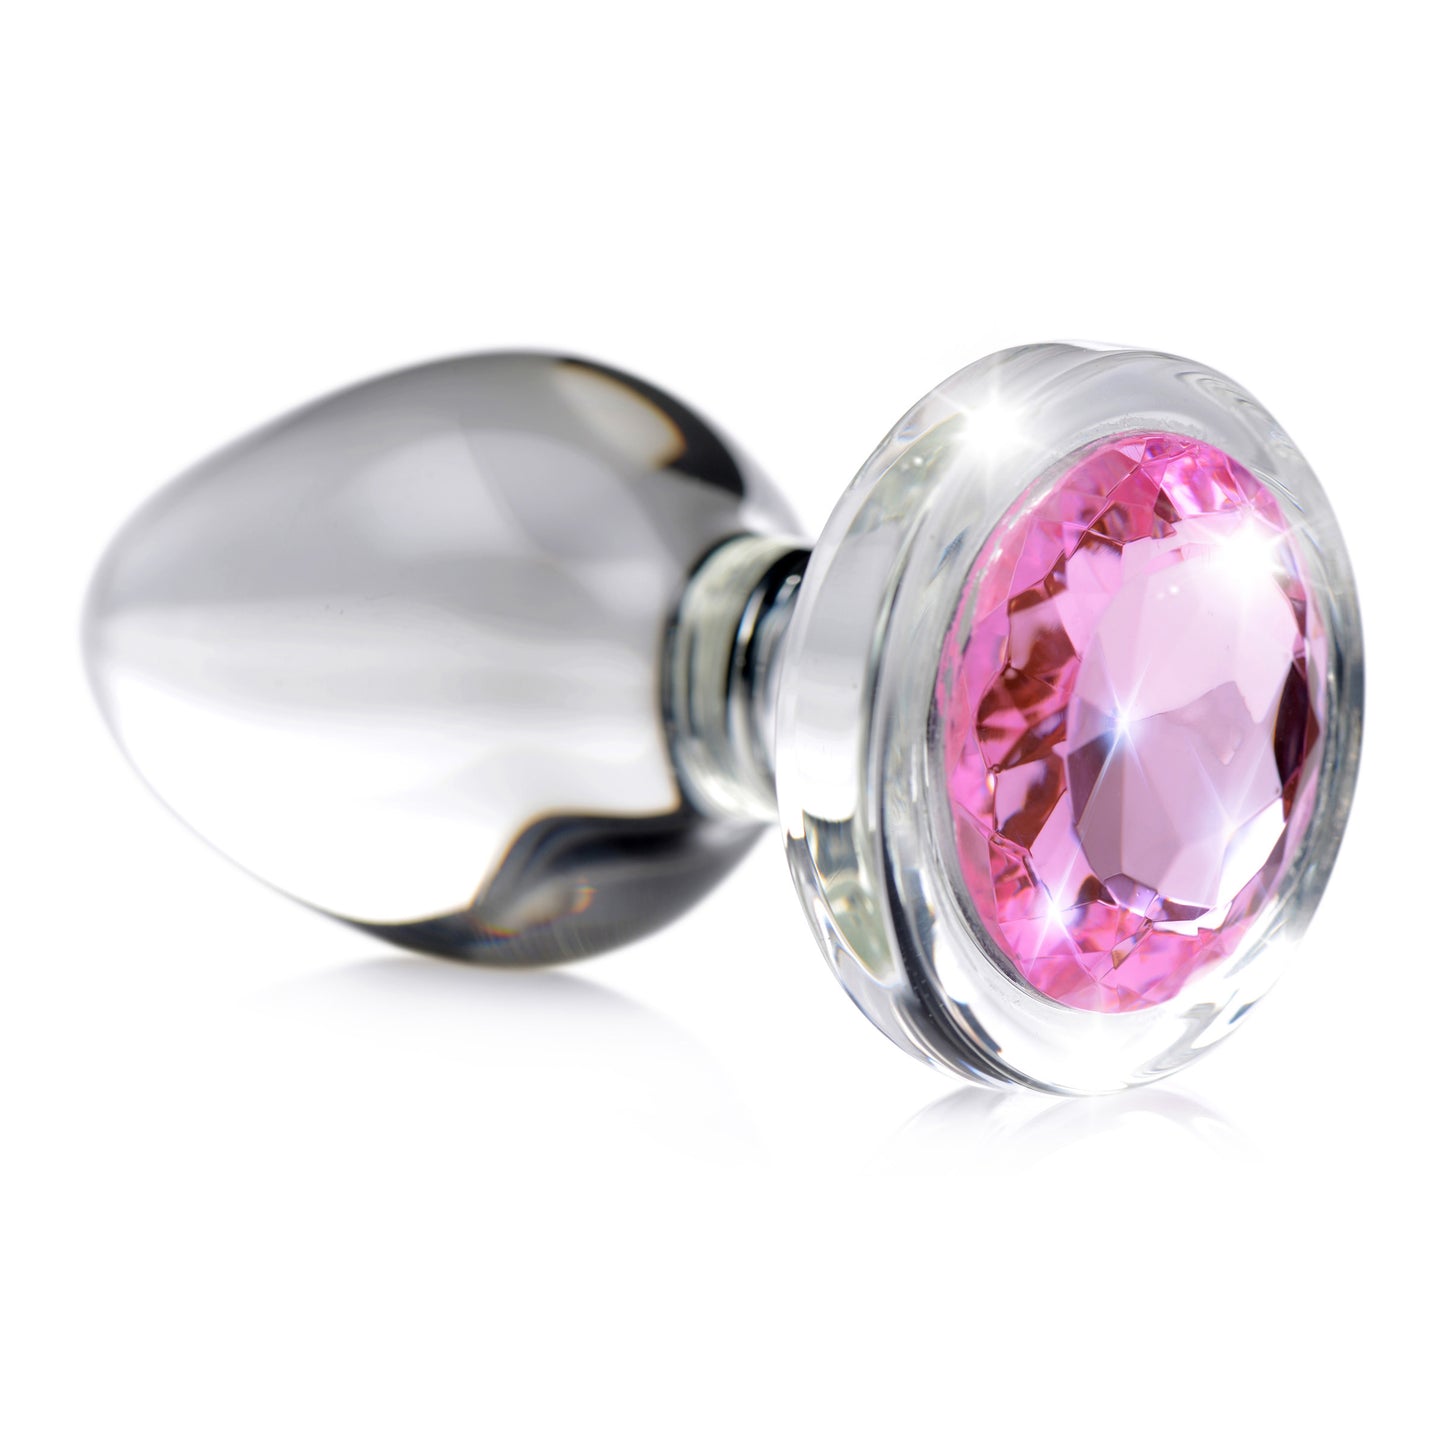 Pink Gem Glass Anal Plug - Medium - UABDSM